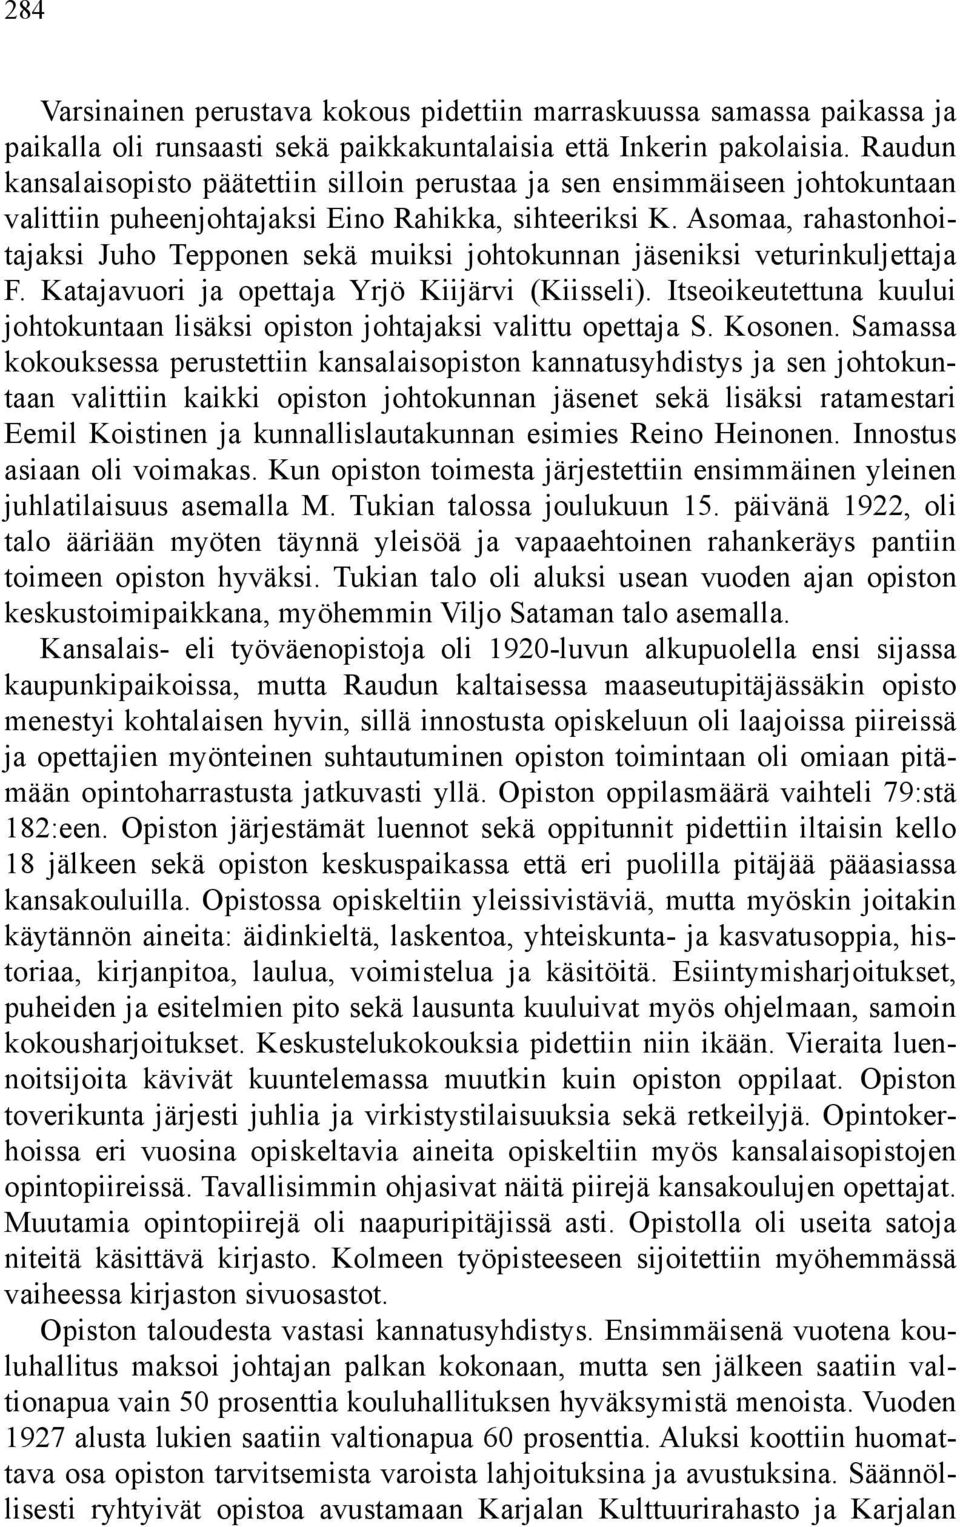 Asomaa, rahastonhoitajaksi Juho Tepponen sekä muiksi johtokunnan jäseniksi veturinkuljettaja F. Katajavuori ja opettaja Yrjö Kiijärvi (Kiisseli).